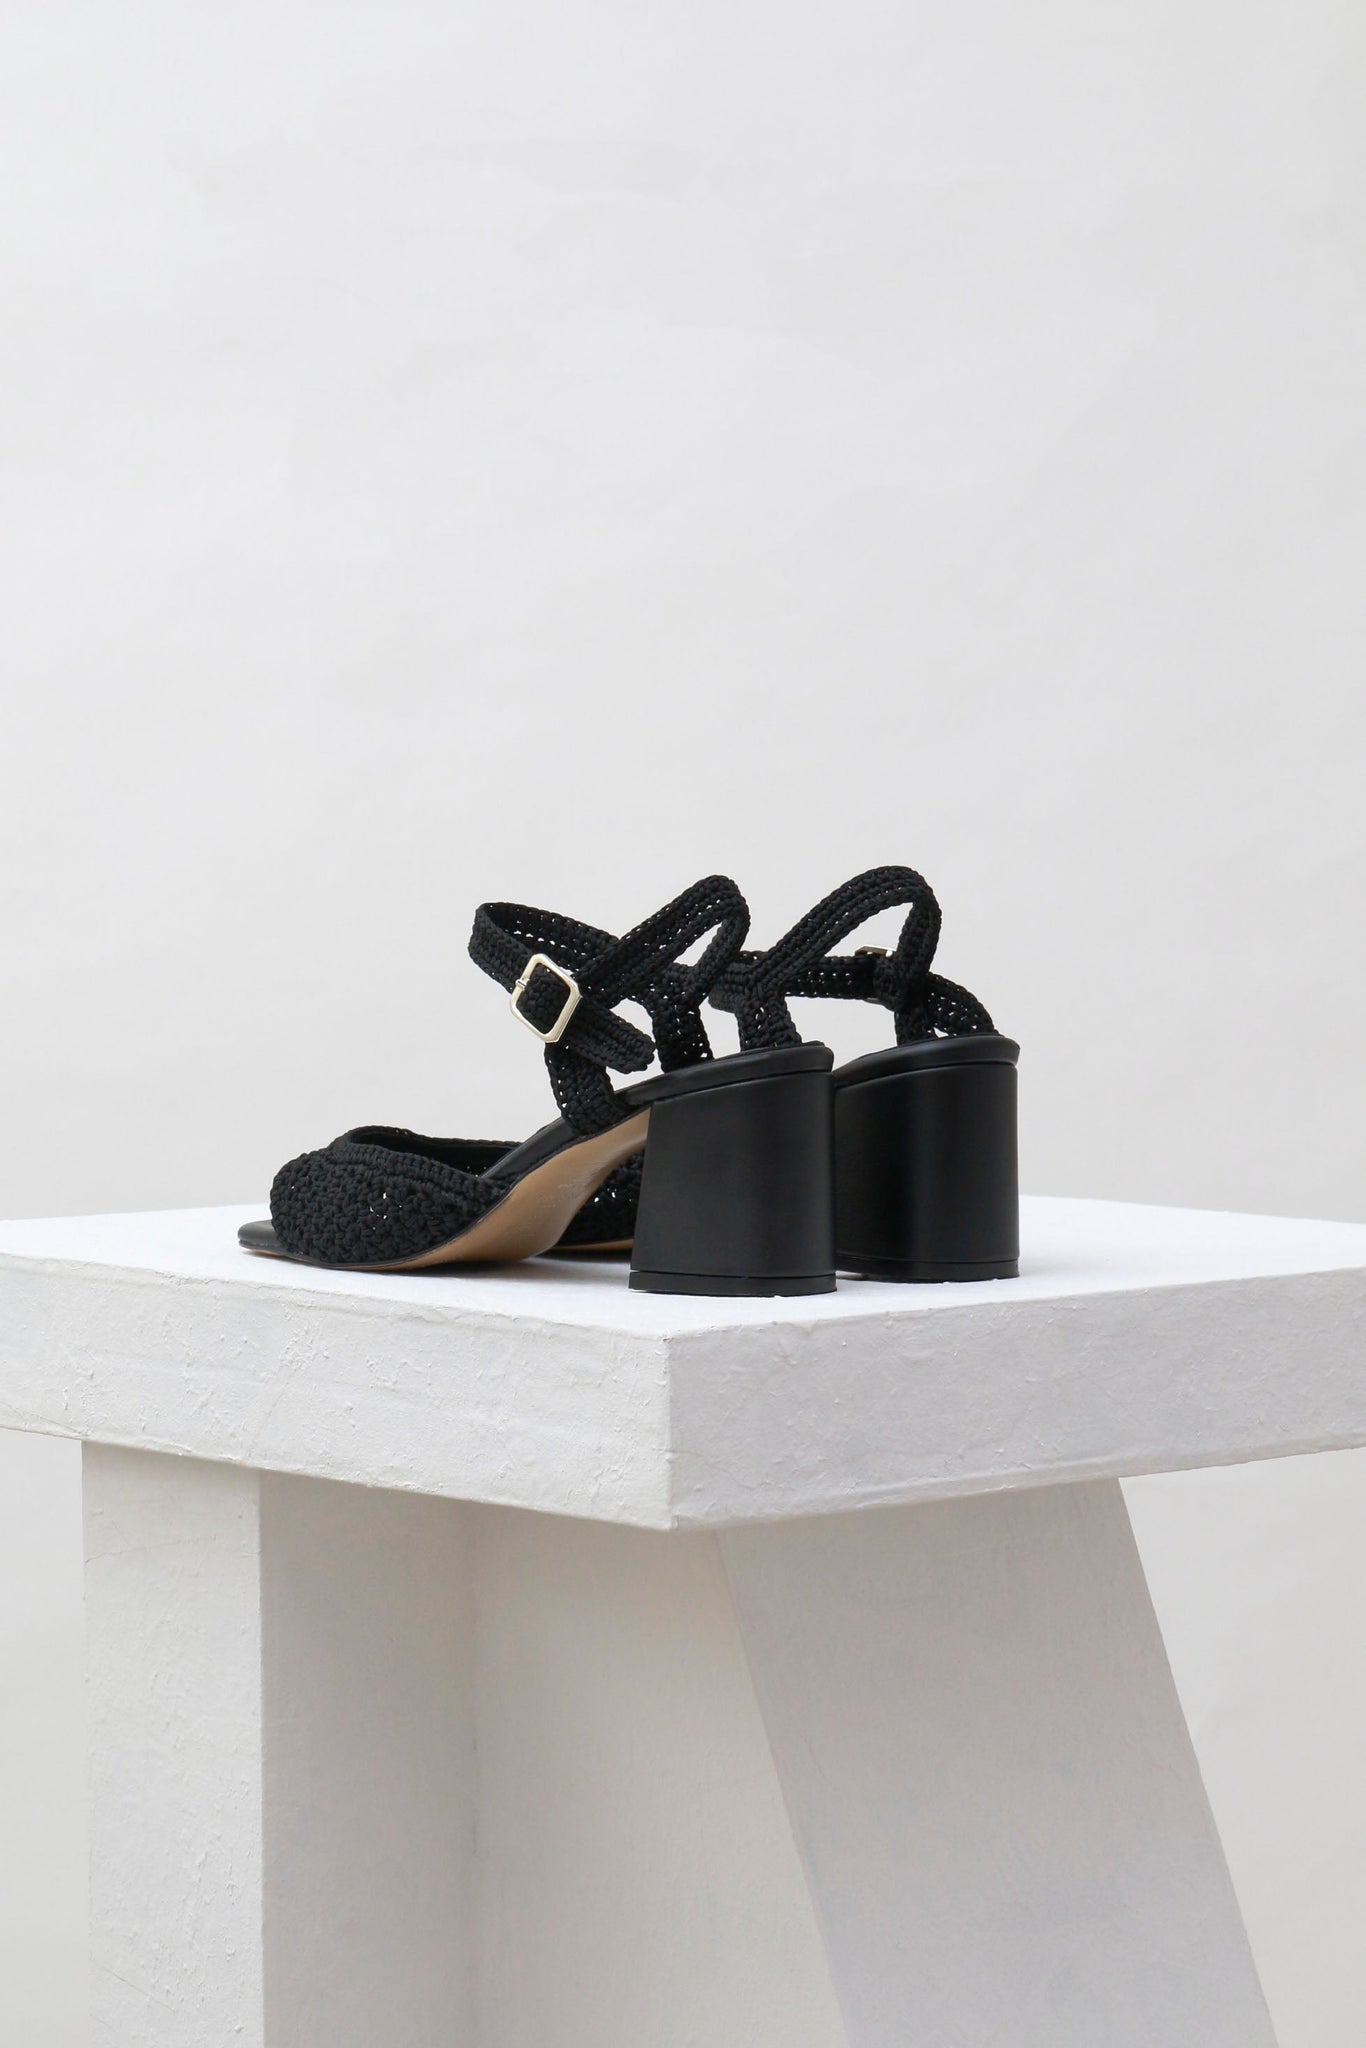 Souliers Martinez Shoes SICILIA - Black Woven Textile Sandals 